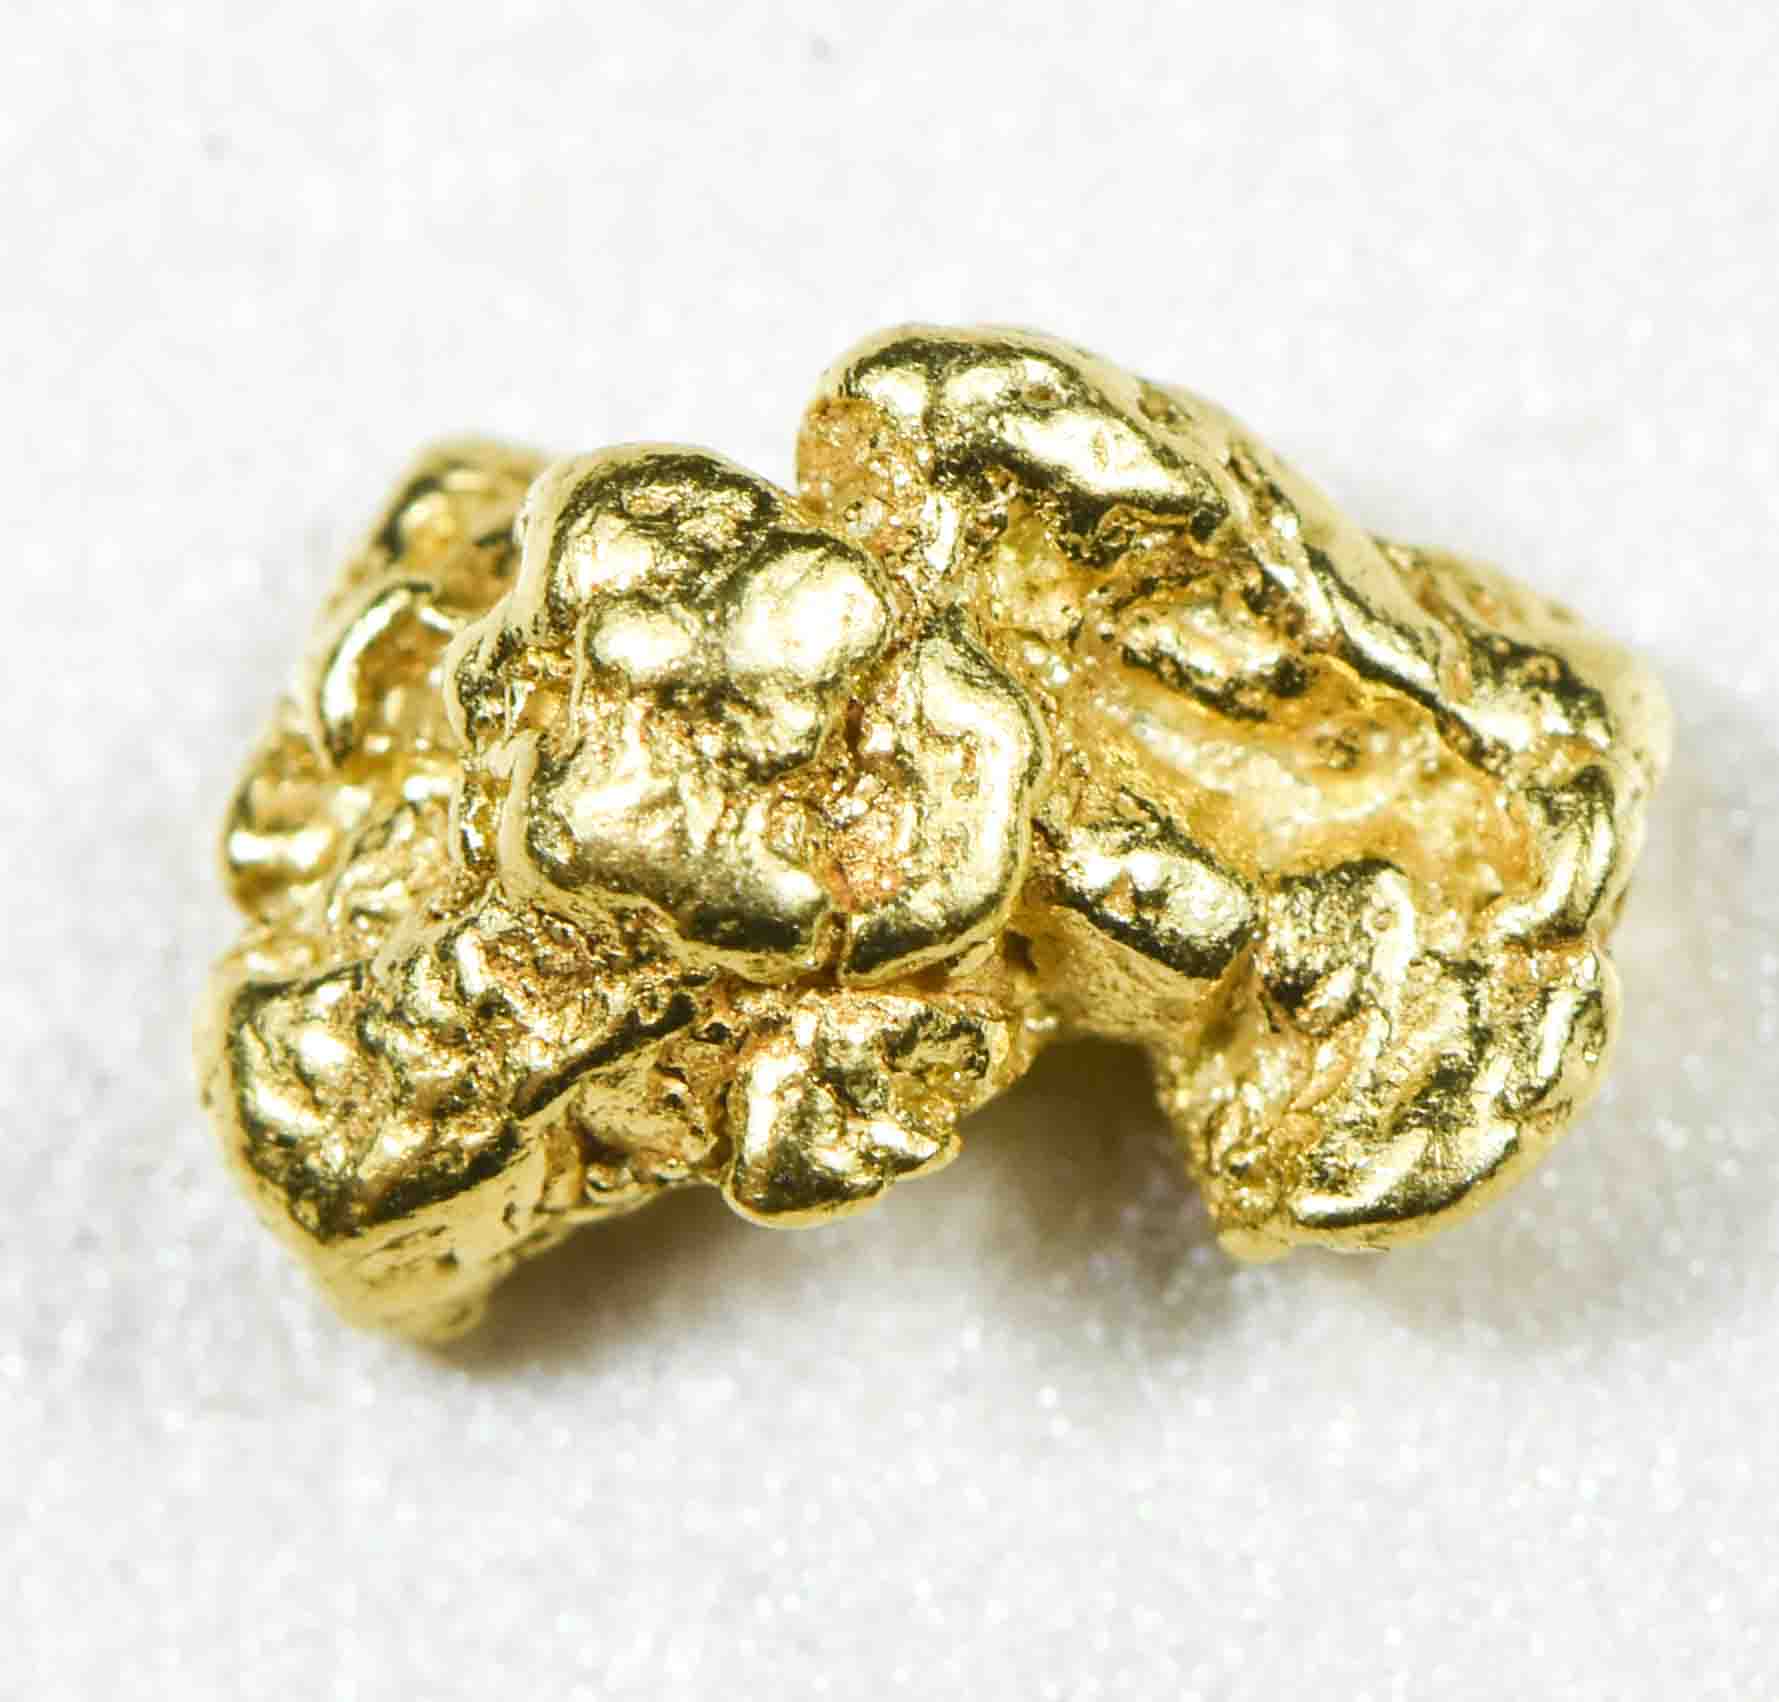 #91 Alaskan BC Natural Gold Nugget 1.06 Grams Genuine